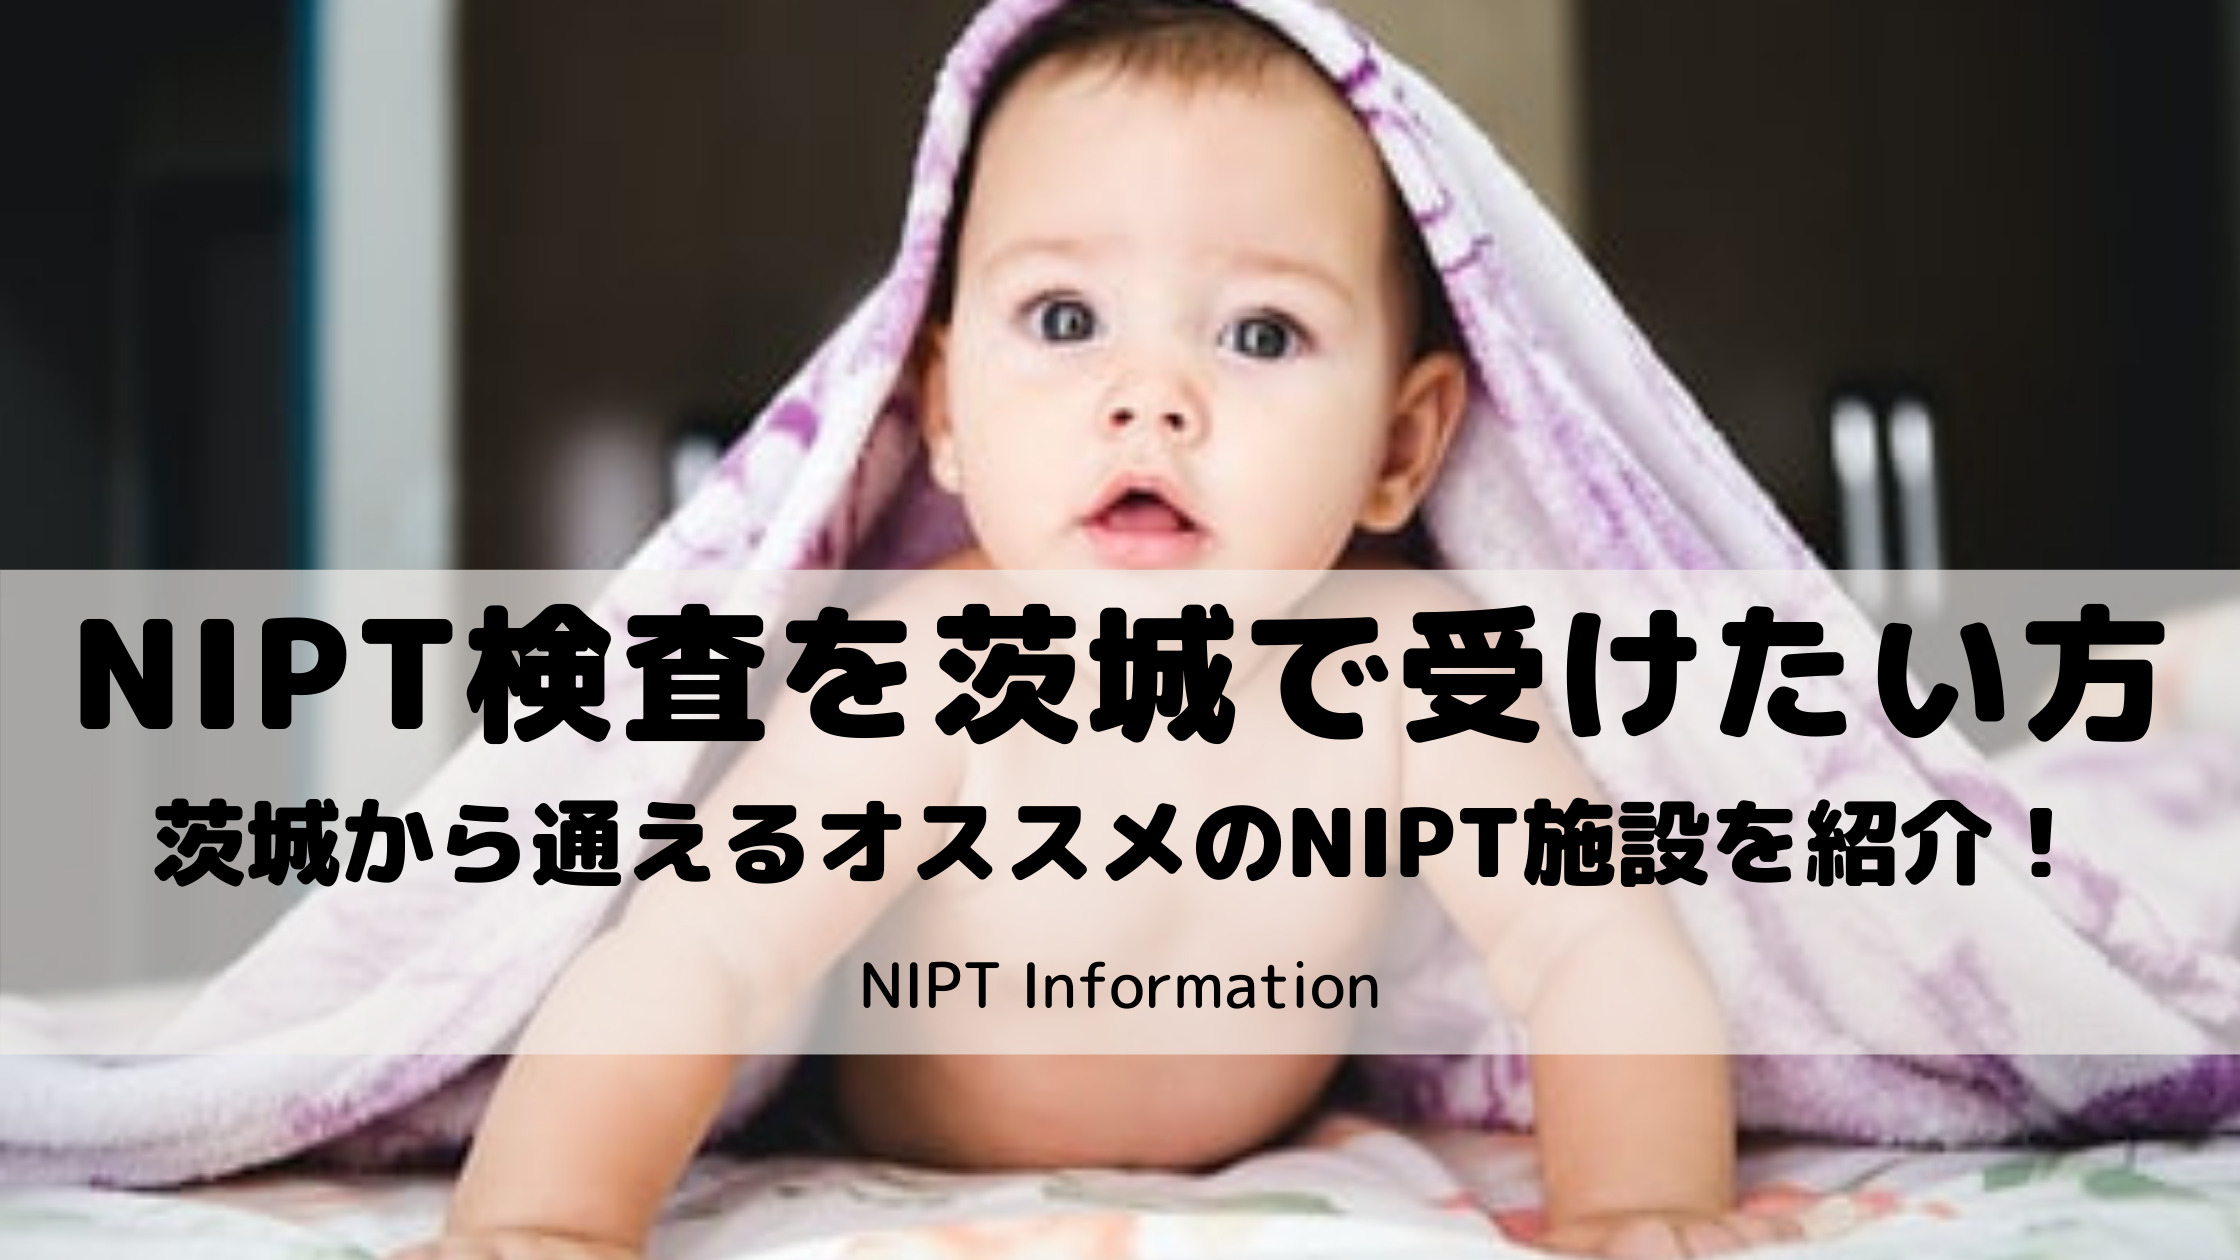 NIPT検査を茨城で受けたい方向けにおすすめの施設を５つ紹介